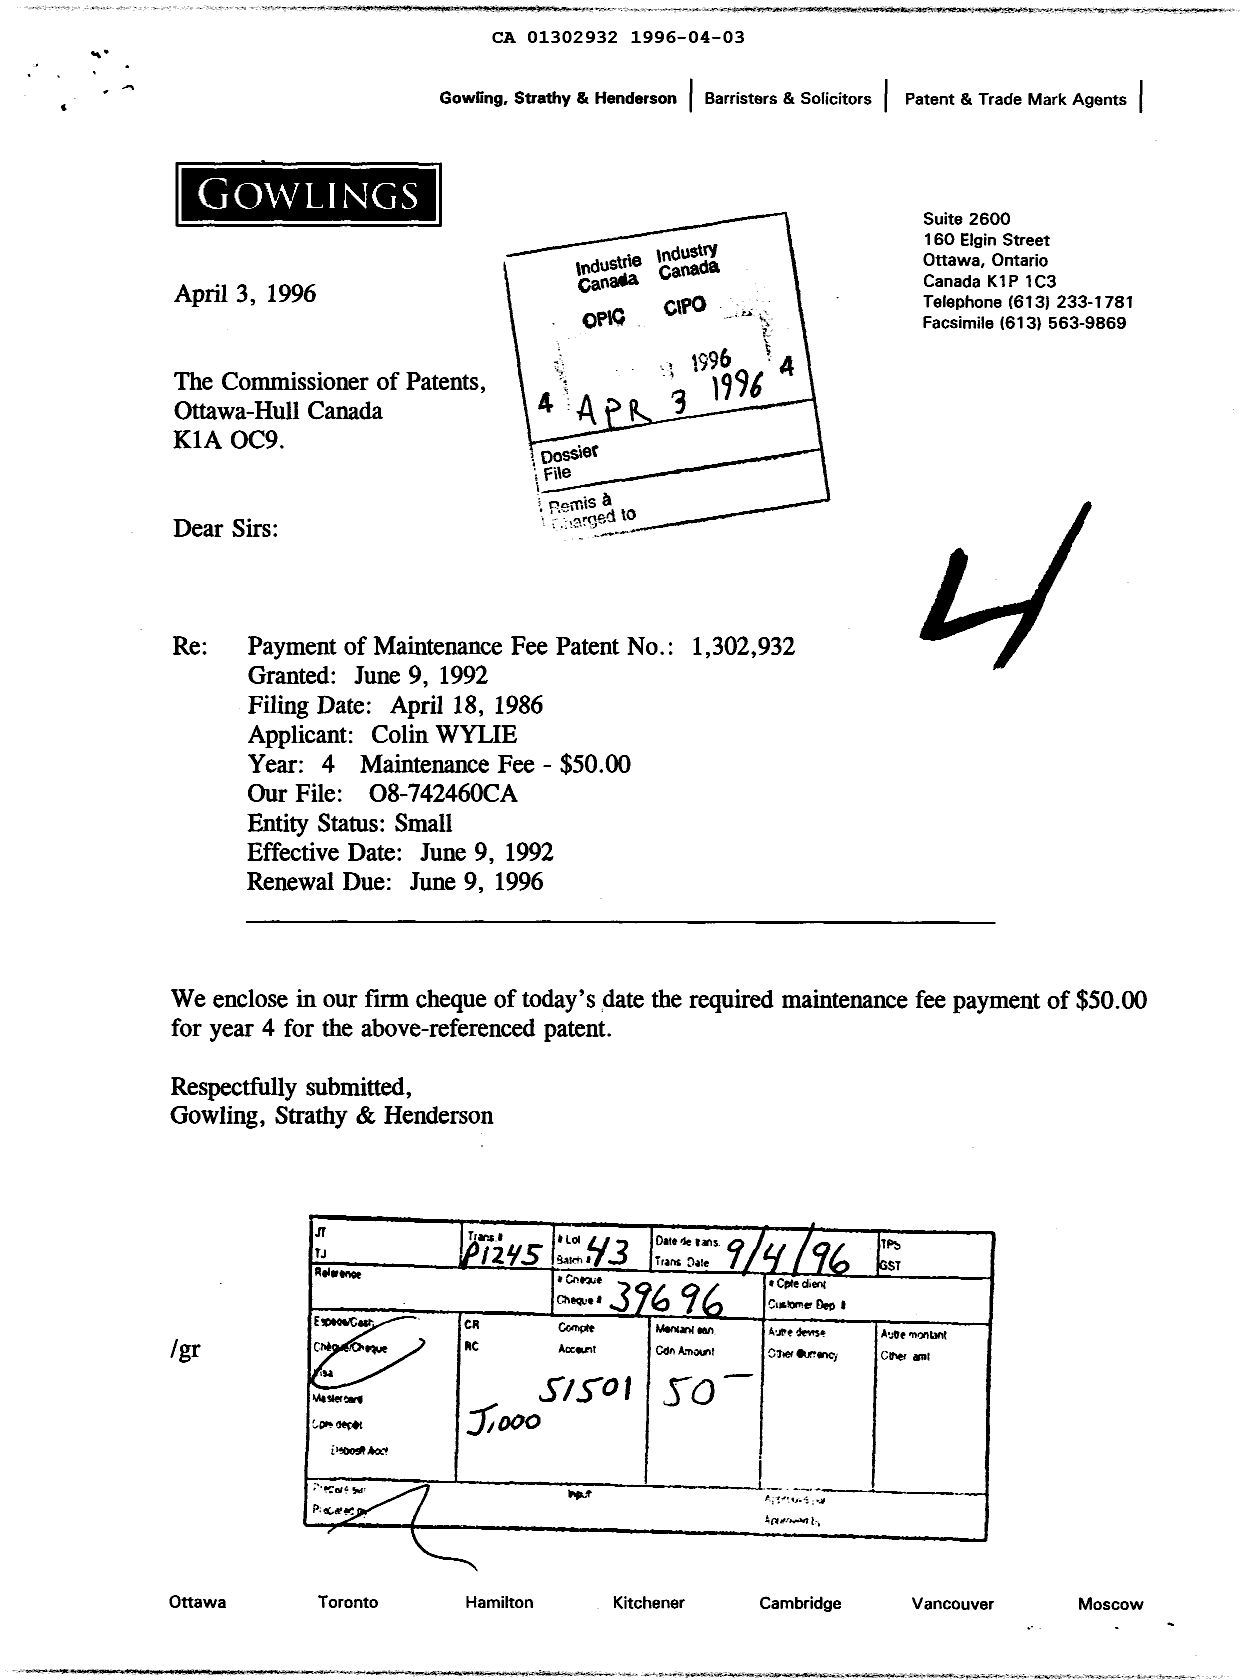 Document de brevet canadien 1302932. Taxes 19960403. Image 1 de 1